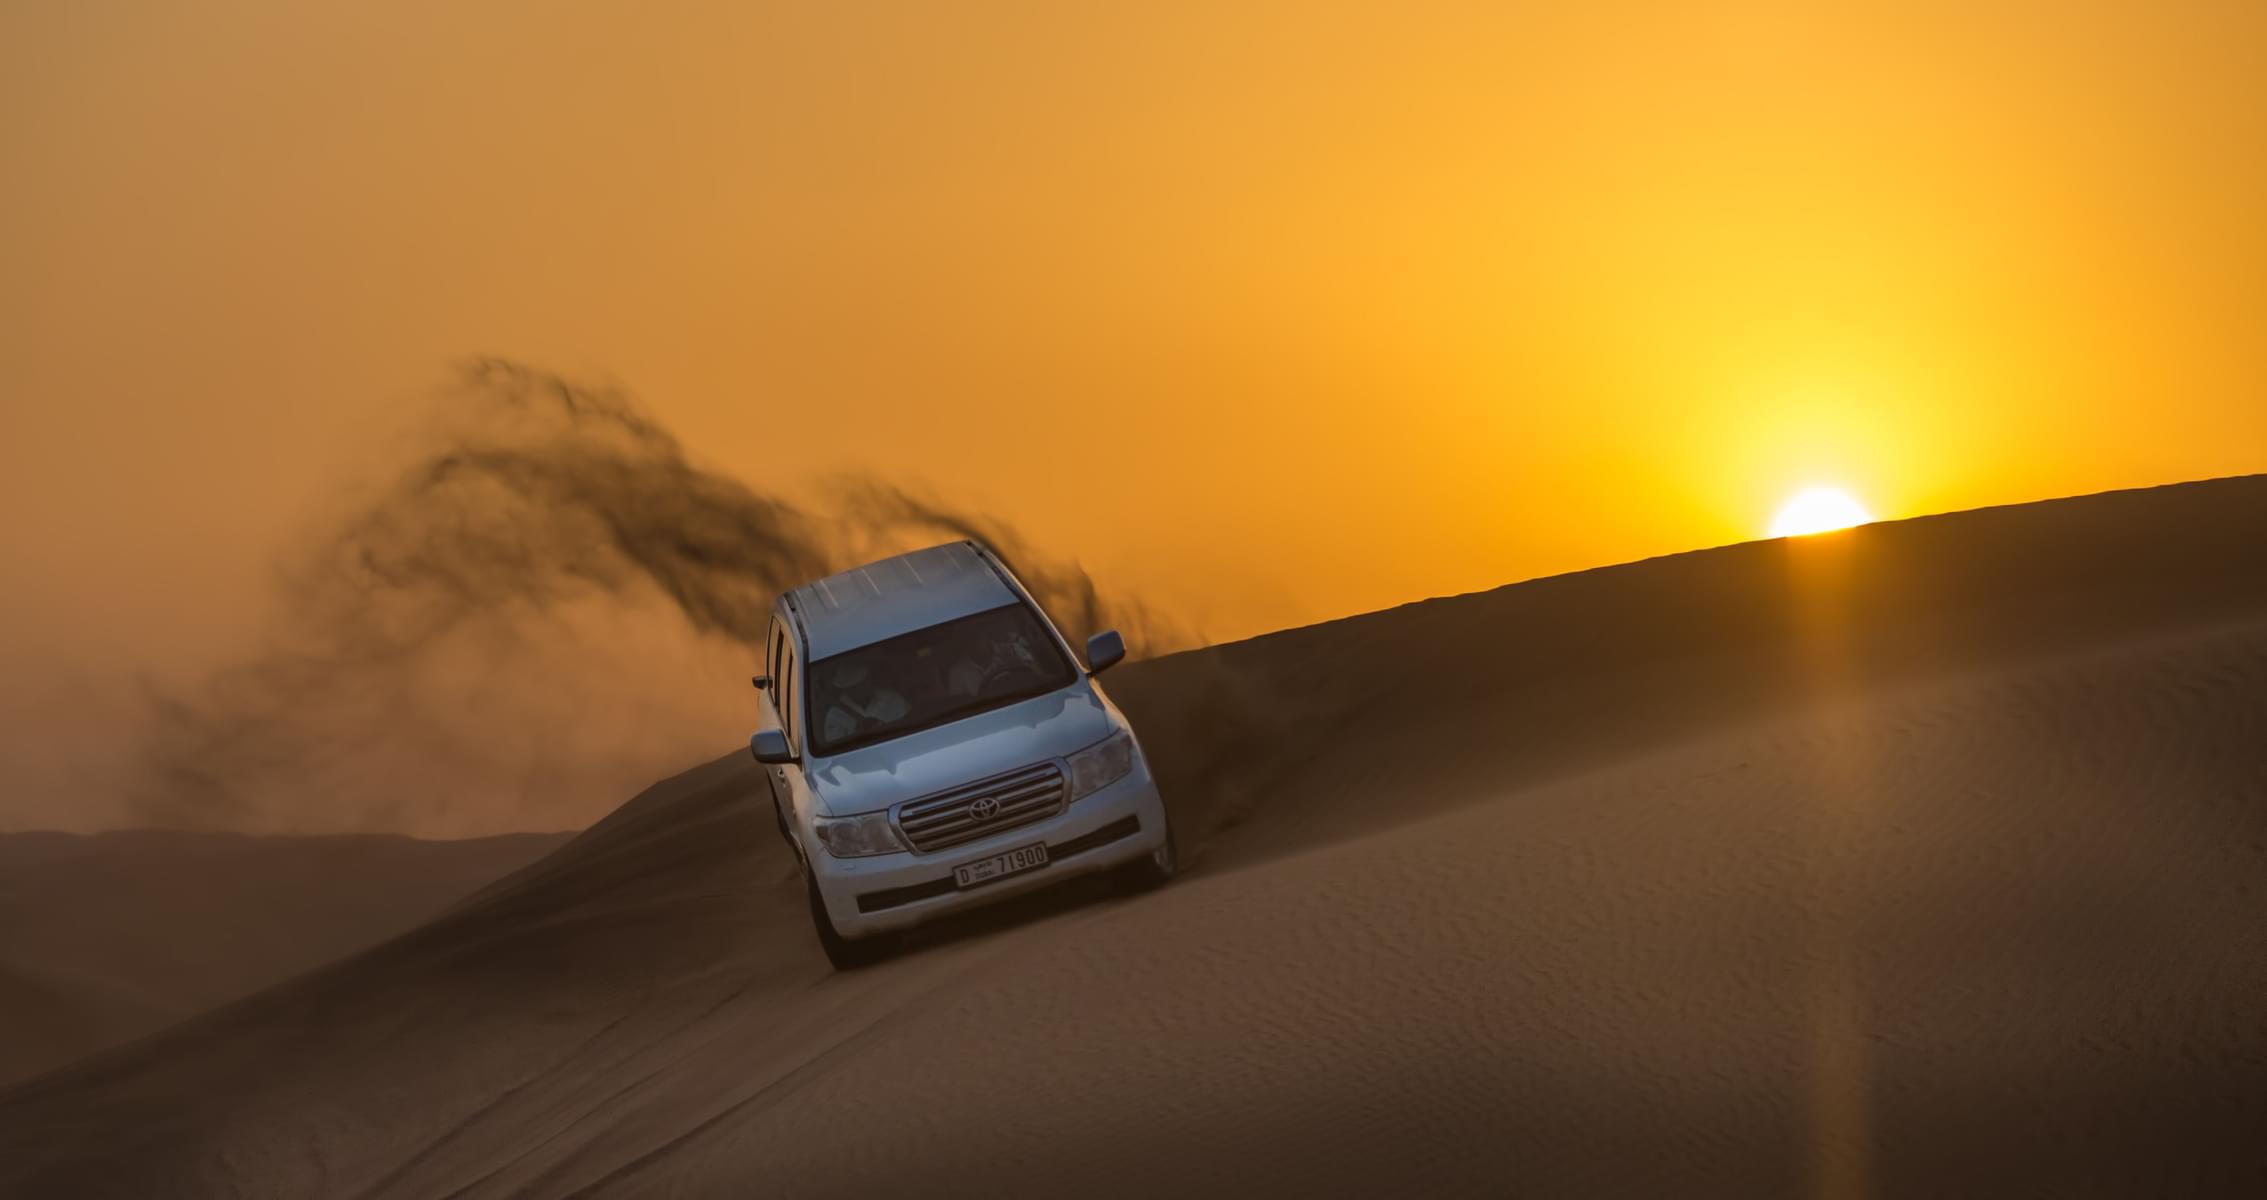 The Deals We Offer for Abu Dhabi Desert Safari